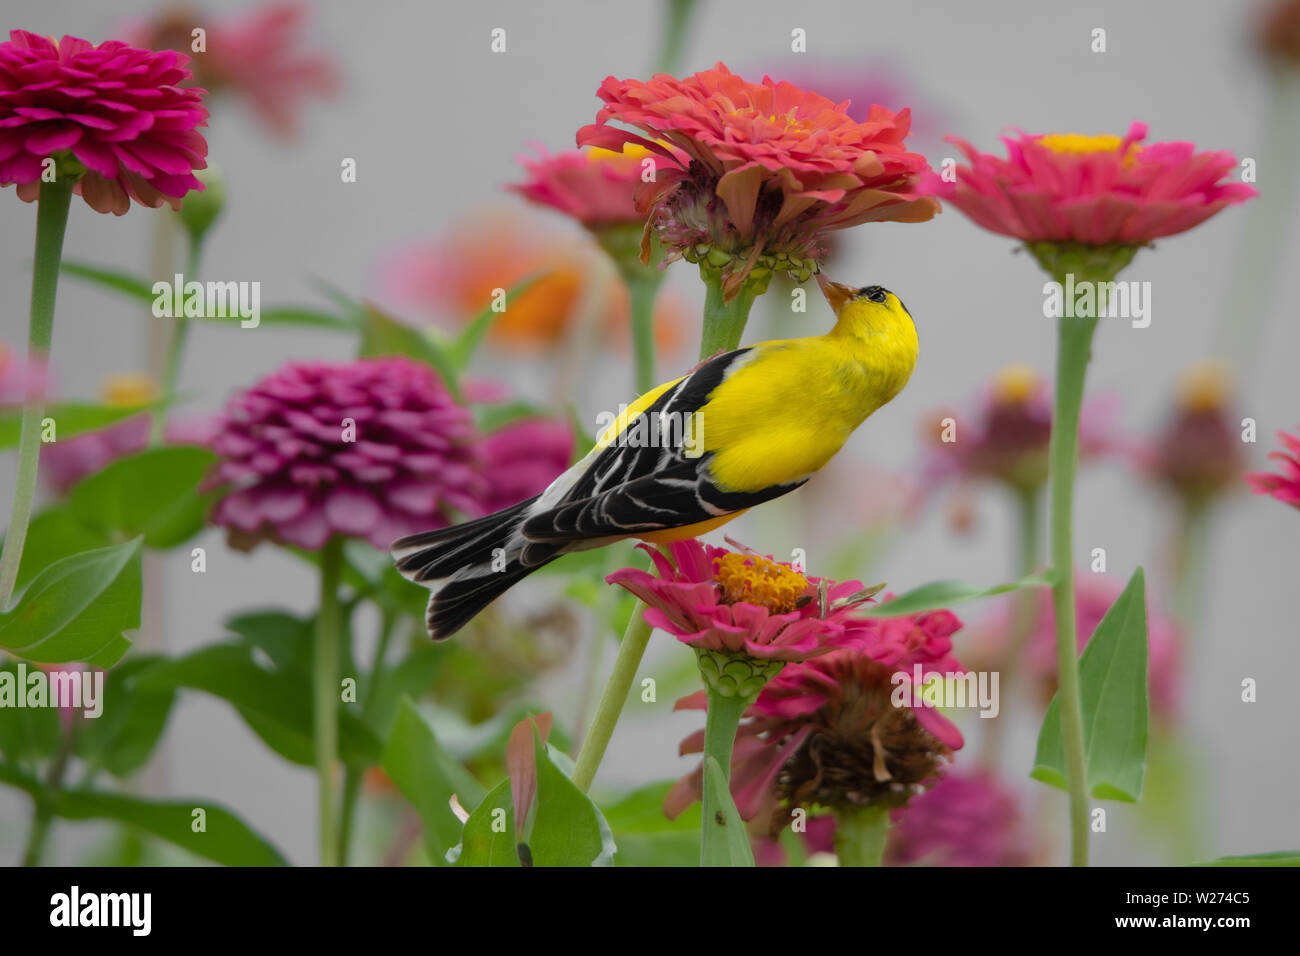 Un oiseau jaune et noir entre les perchoirs finch violet, rouge, orange et rose zinnia fleurs Banque D'Images